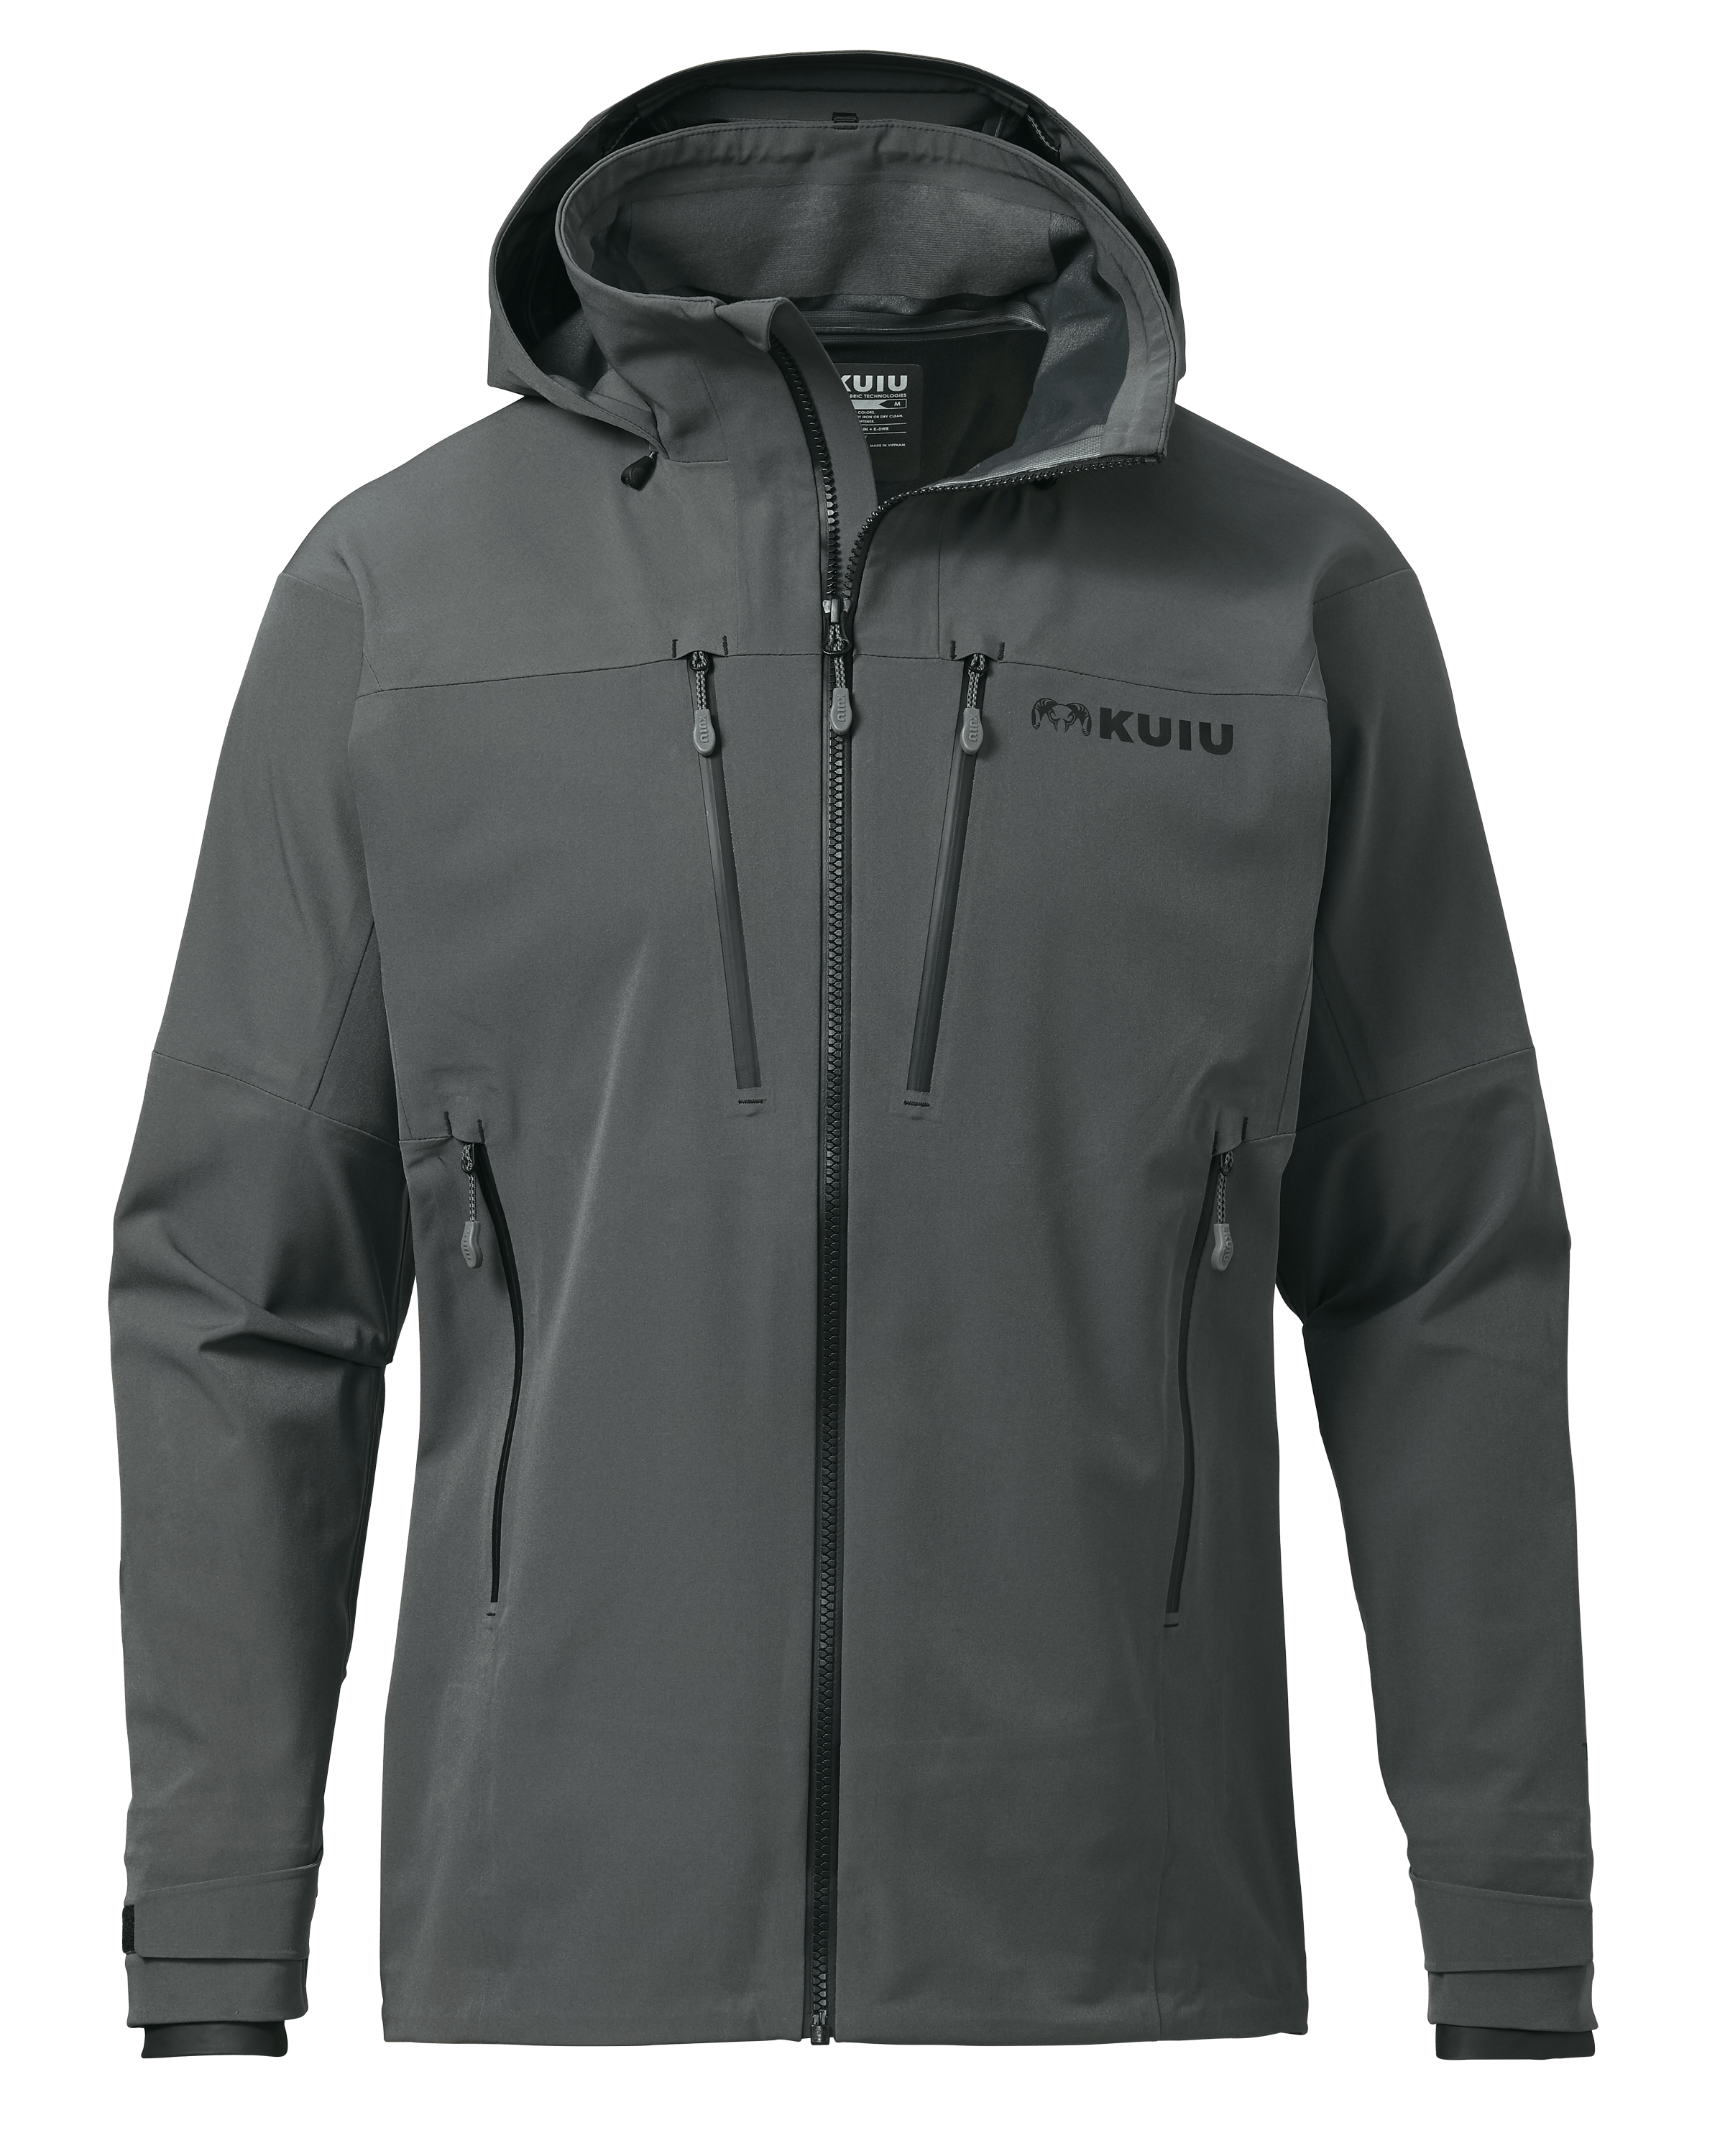 KUIU Yukon TR Rain Hunting Jacket in Gunmetal | Size 3XL